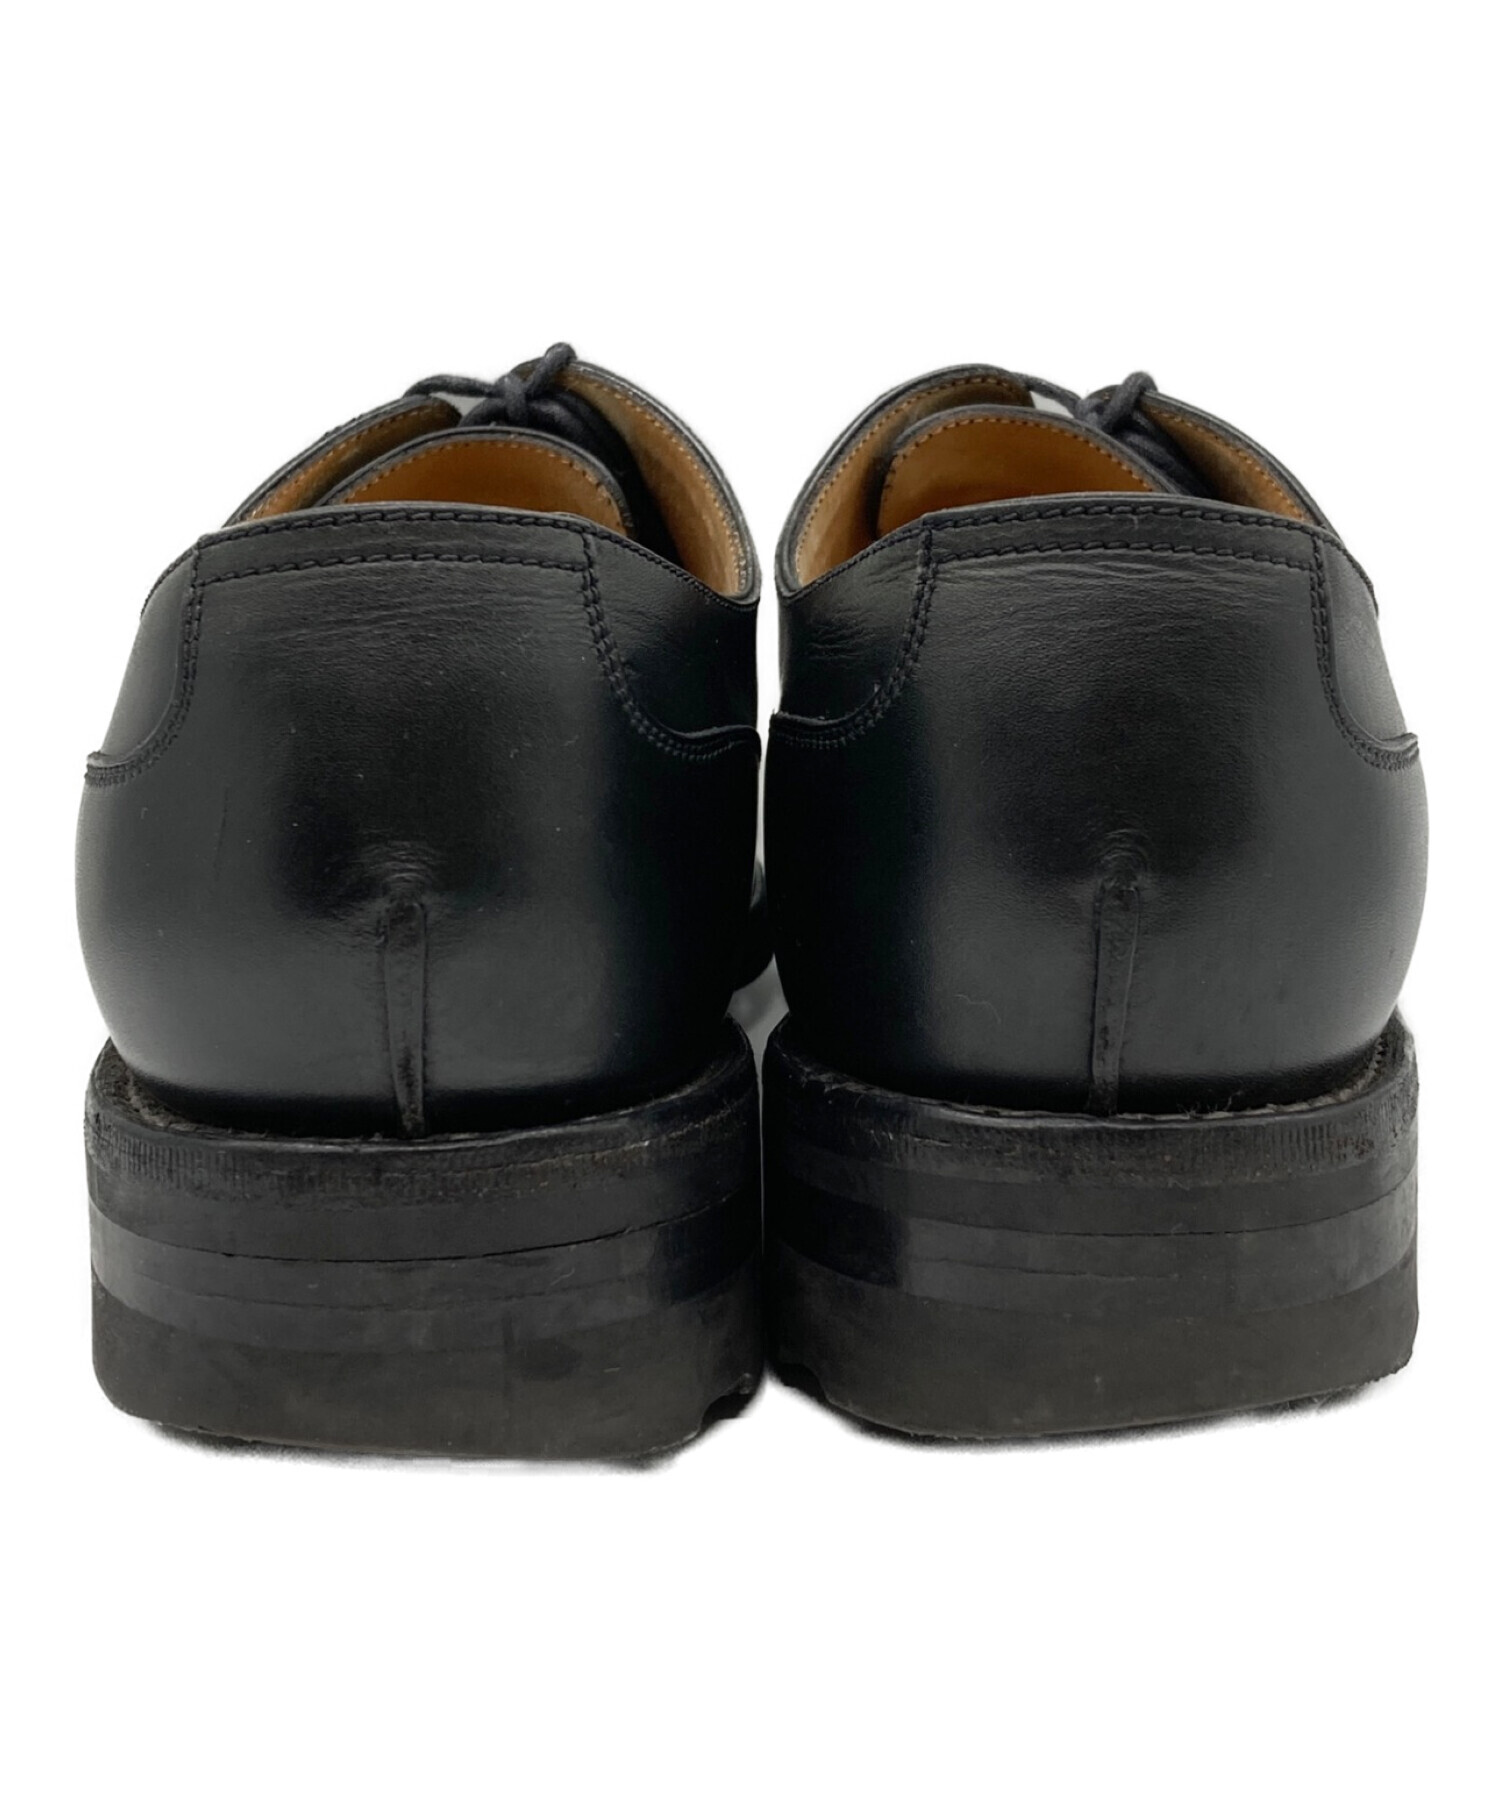 オールシーズン付属品ジェイエムウエストン J.M. WESTON レザーシューズ ダービーシューズ Uチップ カーフレザー 革靴 メンズ 9.5D(28cm相当) ブラウン